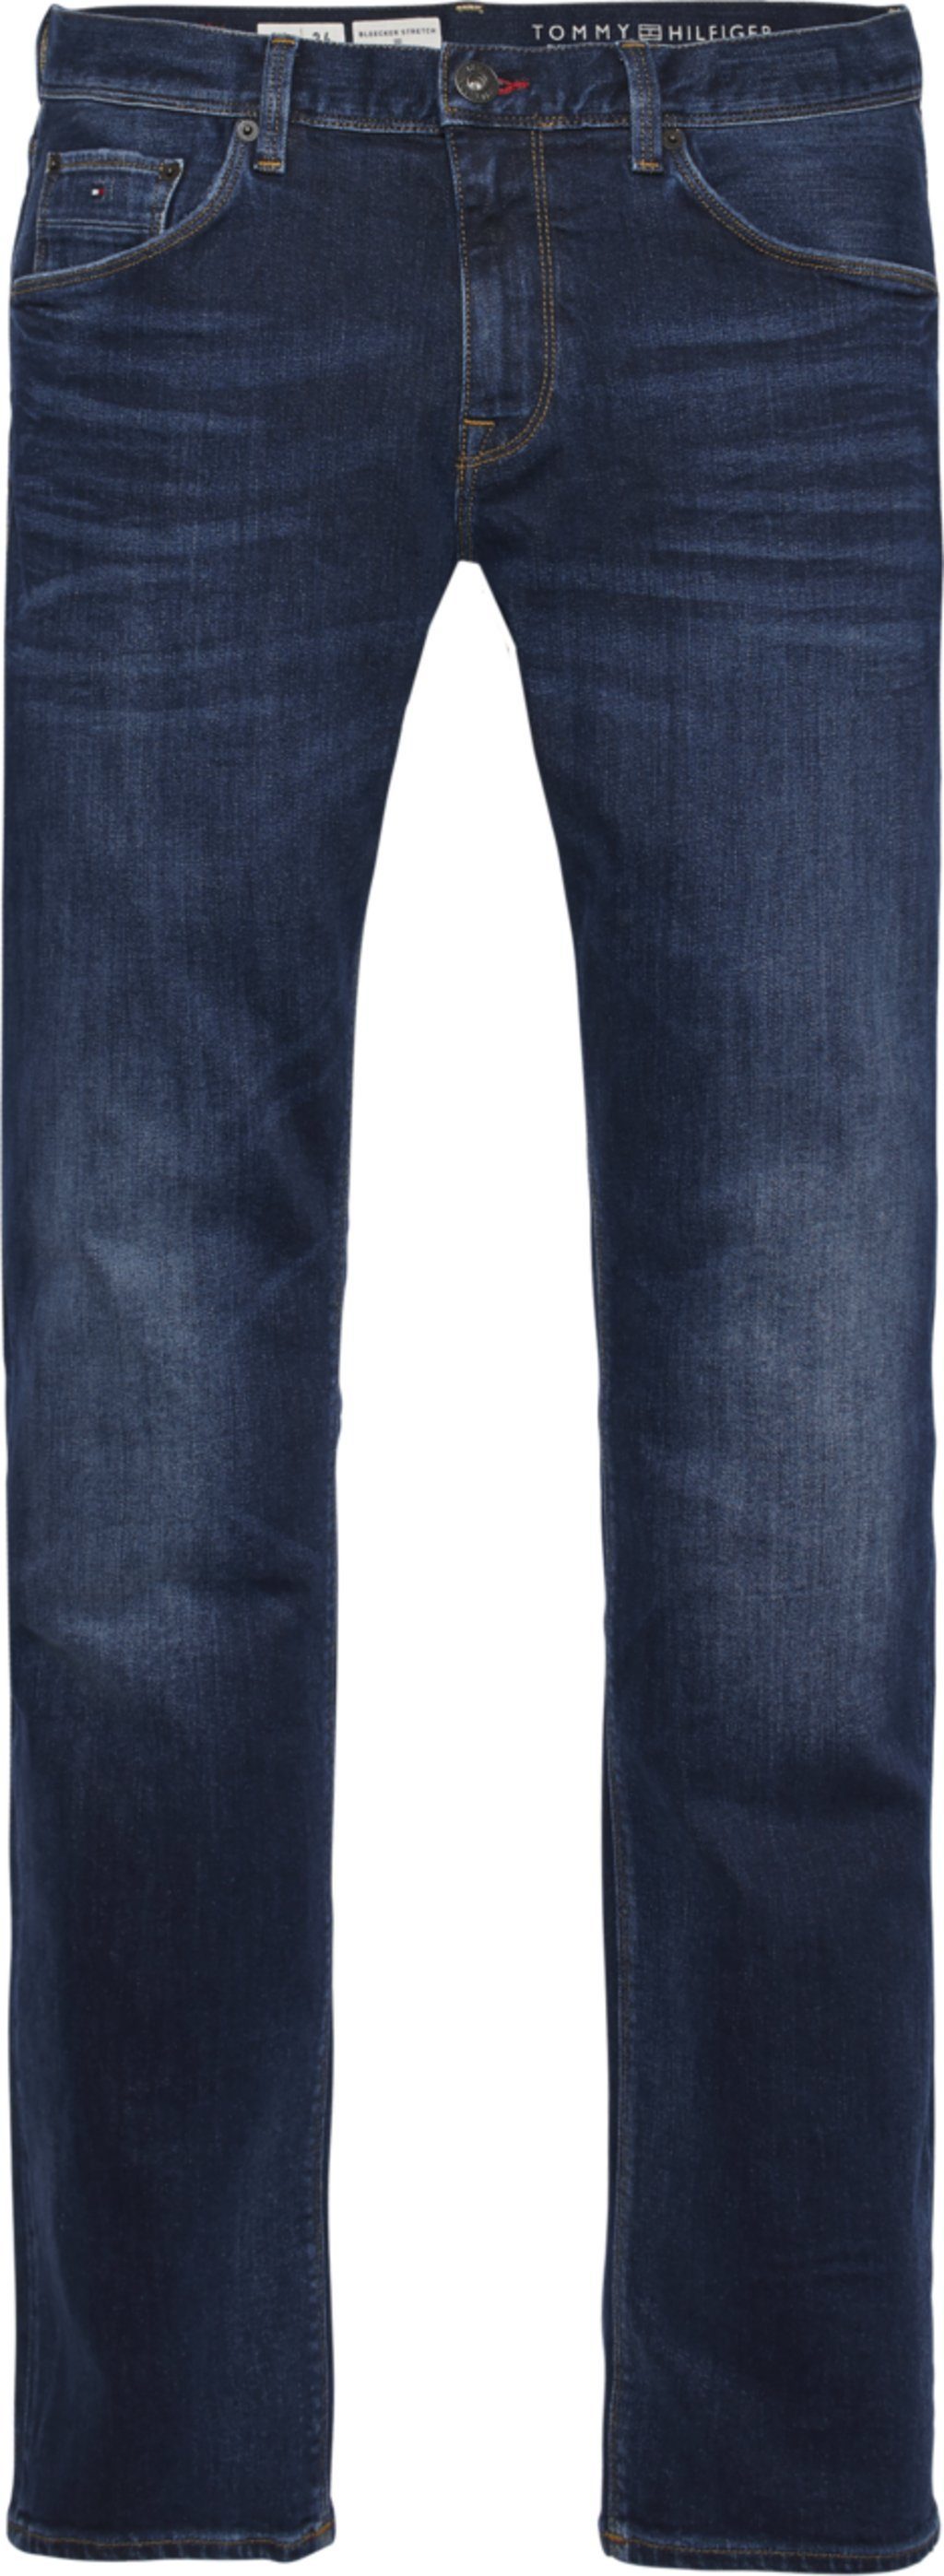 مخطط معدات الملعب مقطع jeans tommy hilfiger herren - stoprestremember.com